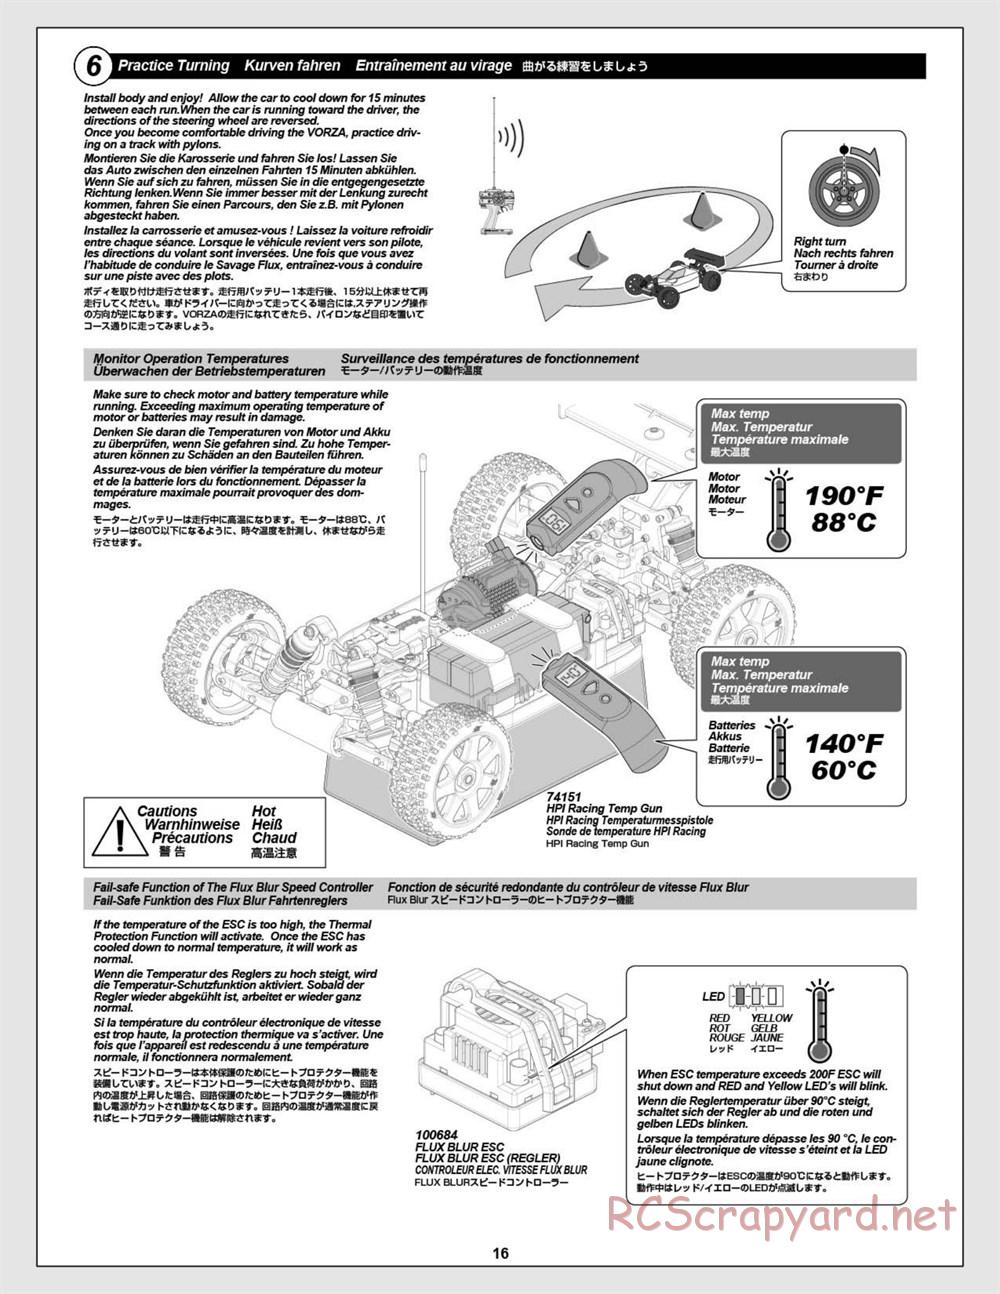 HPI - Vorza Flux HP - Manual - Page 16